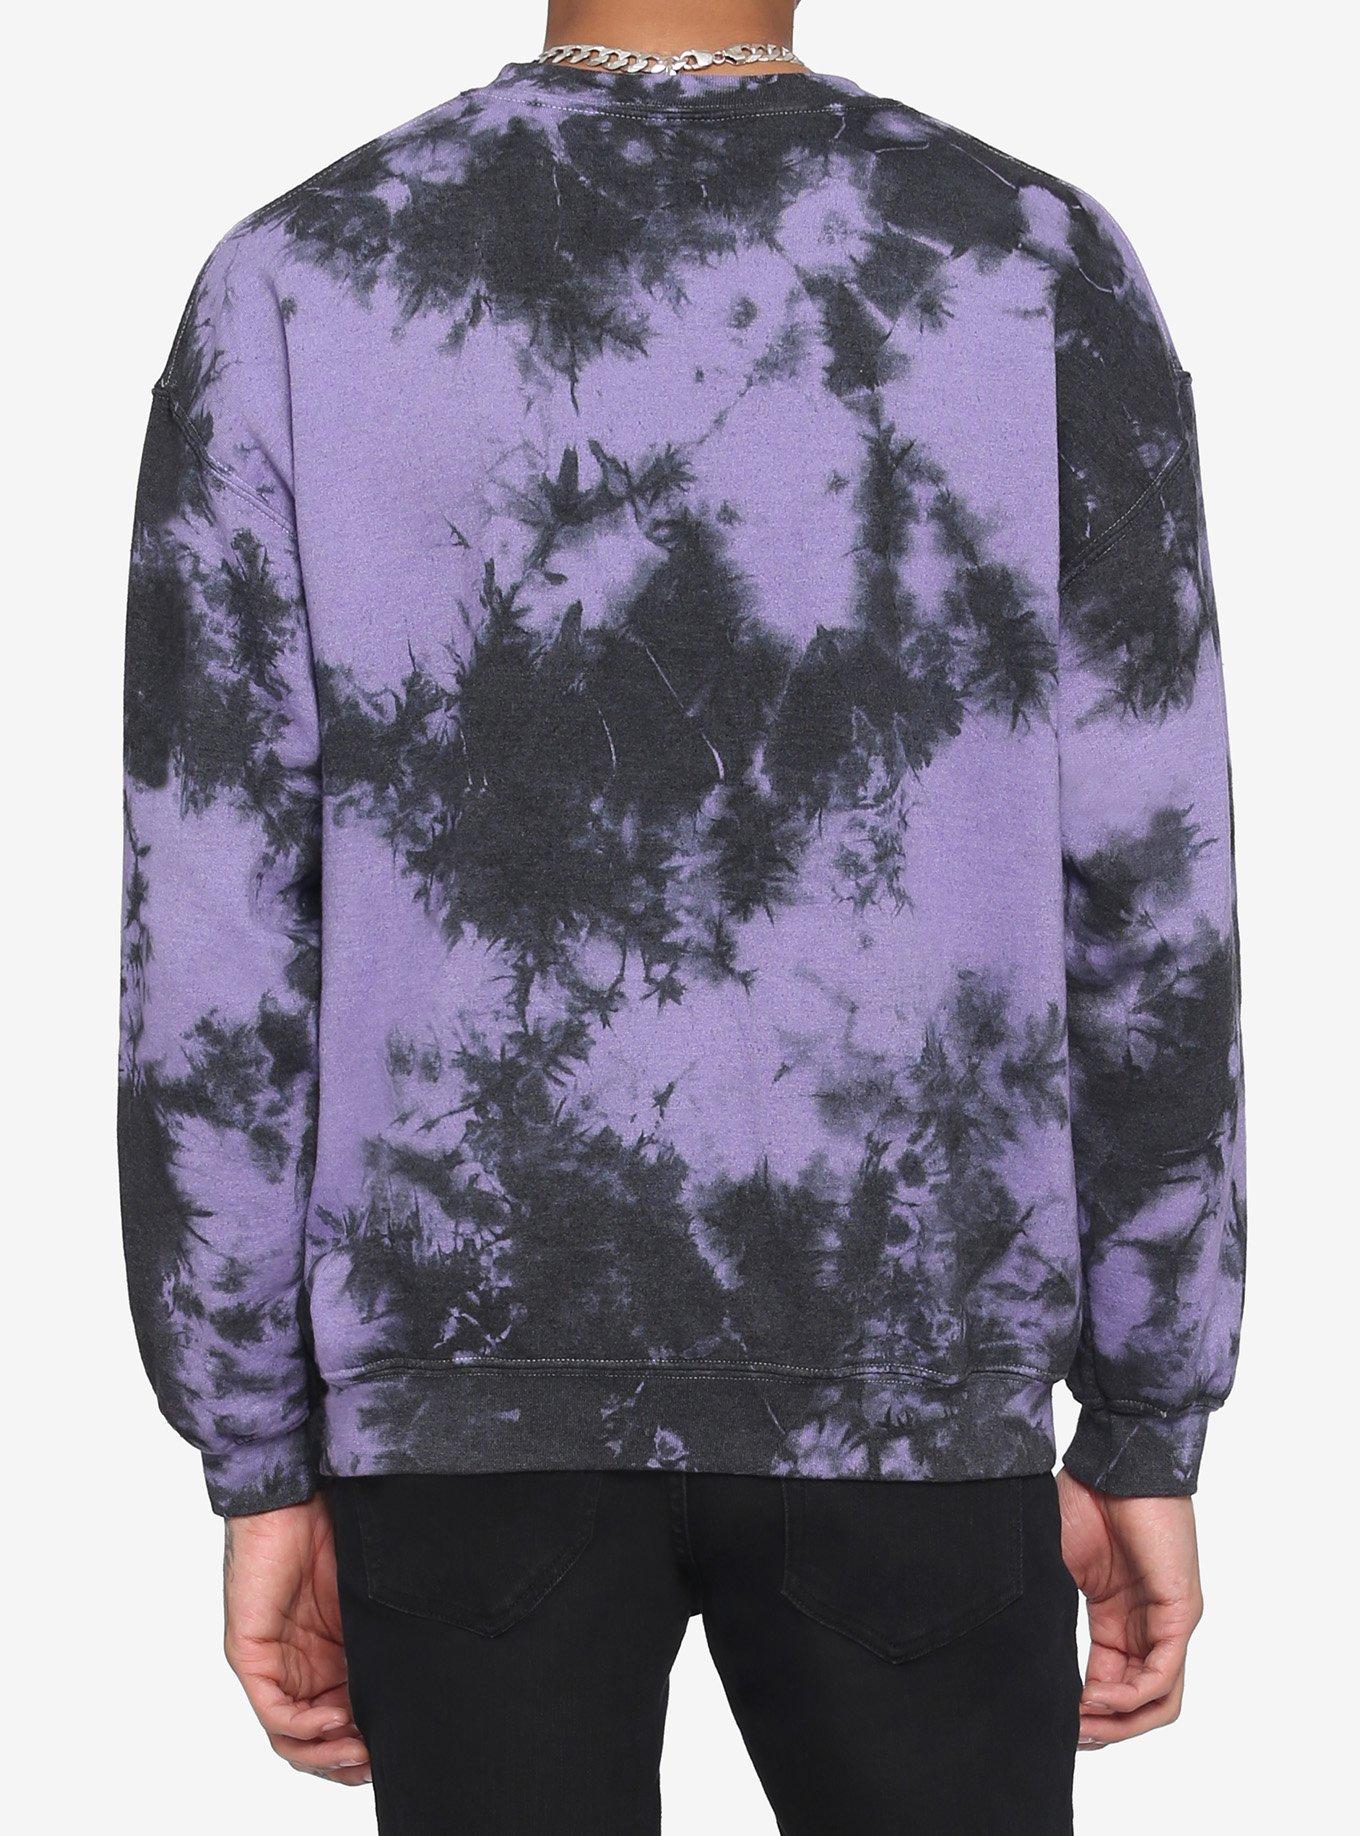 Scream Ghost Face Purple Tie-Dye Sweatshirt | Hot Topic